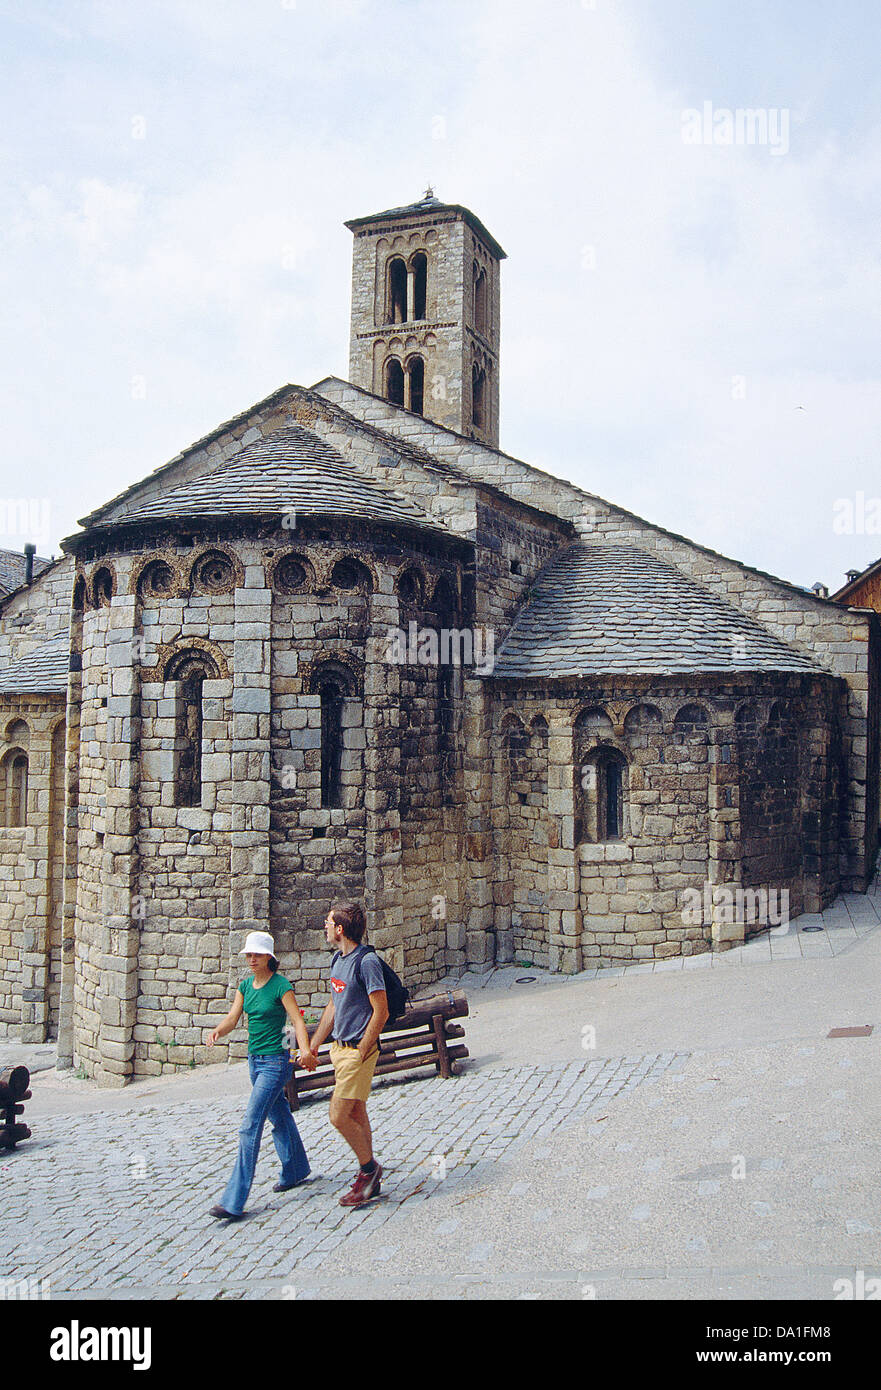 Les absides de l'église Santa Maria. Shadown, province Lerida, Catalogne, Espagne. Banque D'Images